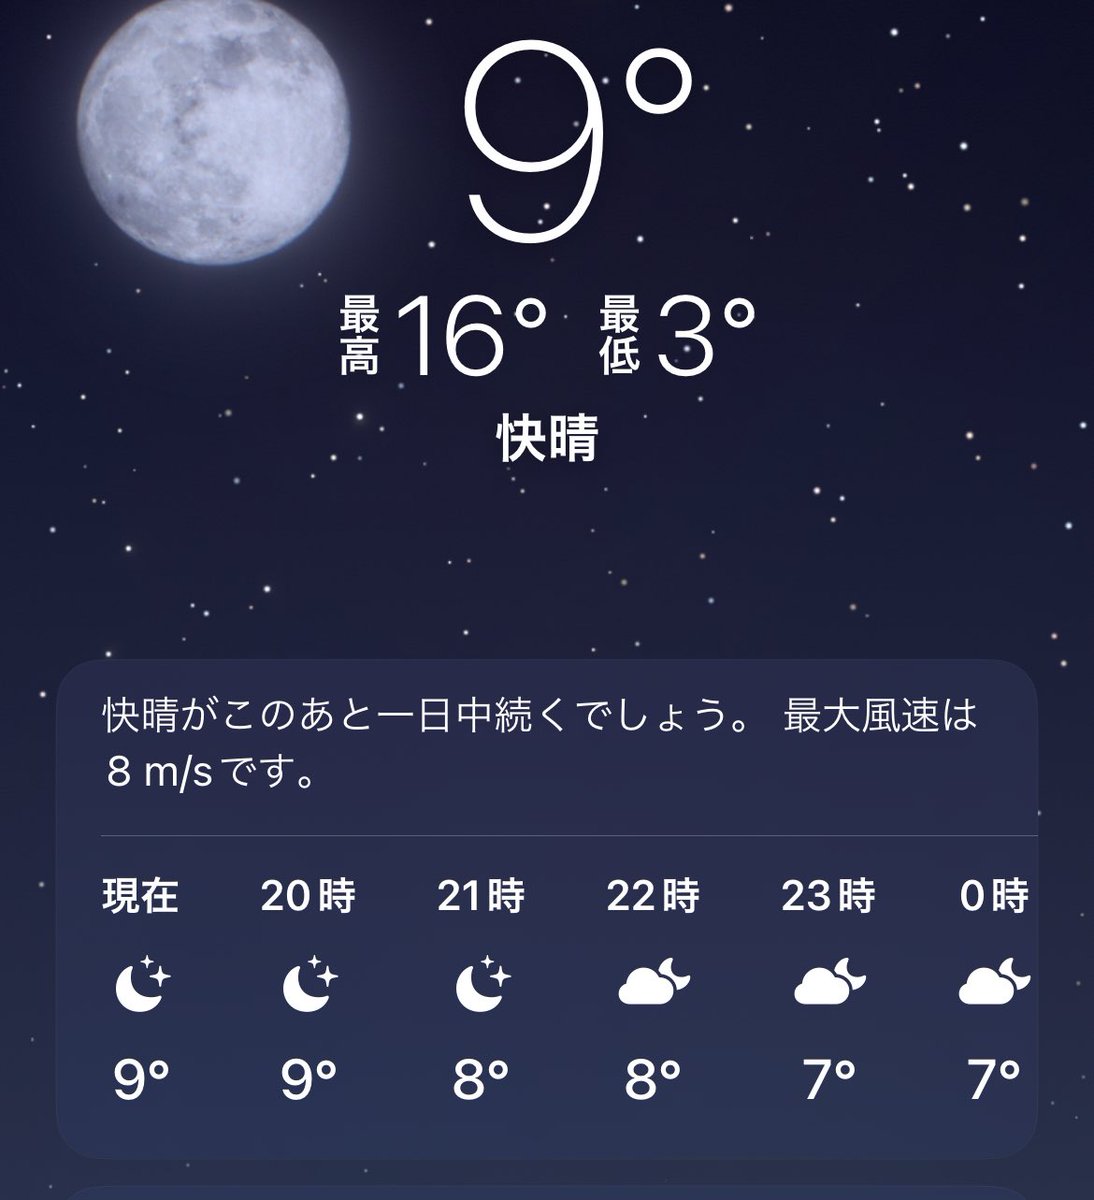 北海道着いちゃった、、
寒すぎな:(´◦ω◦｀):